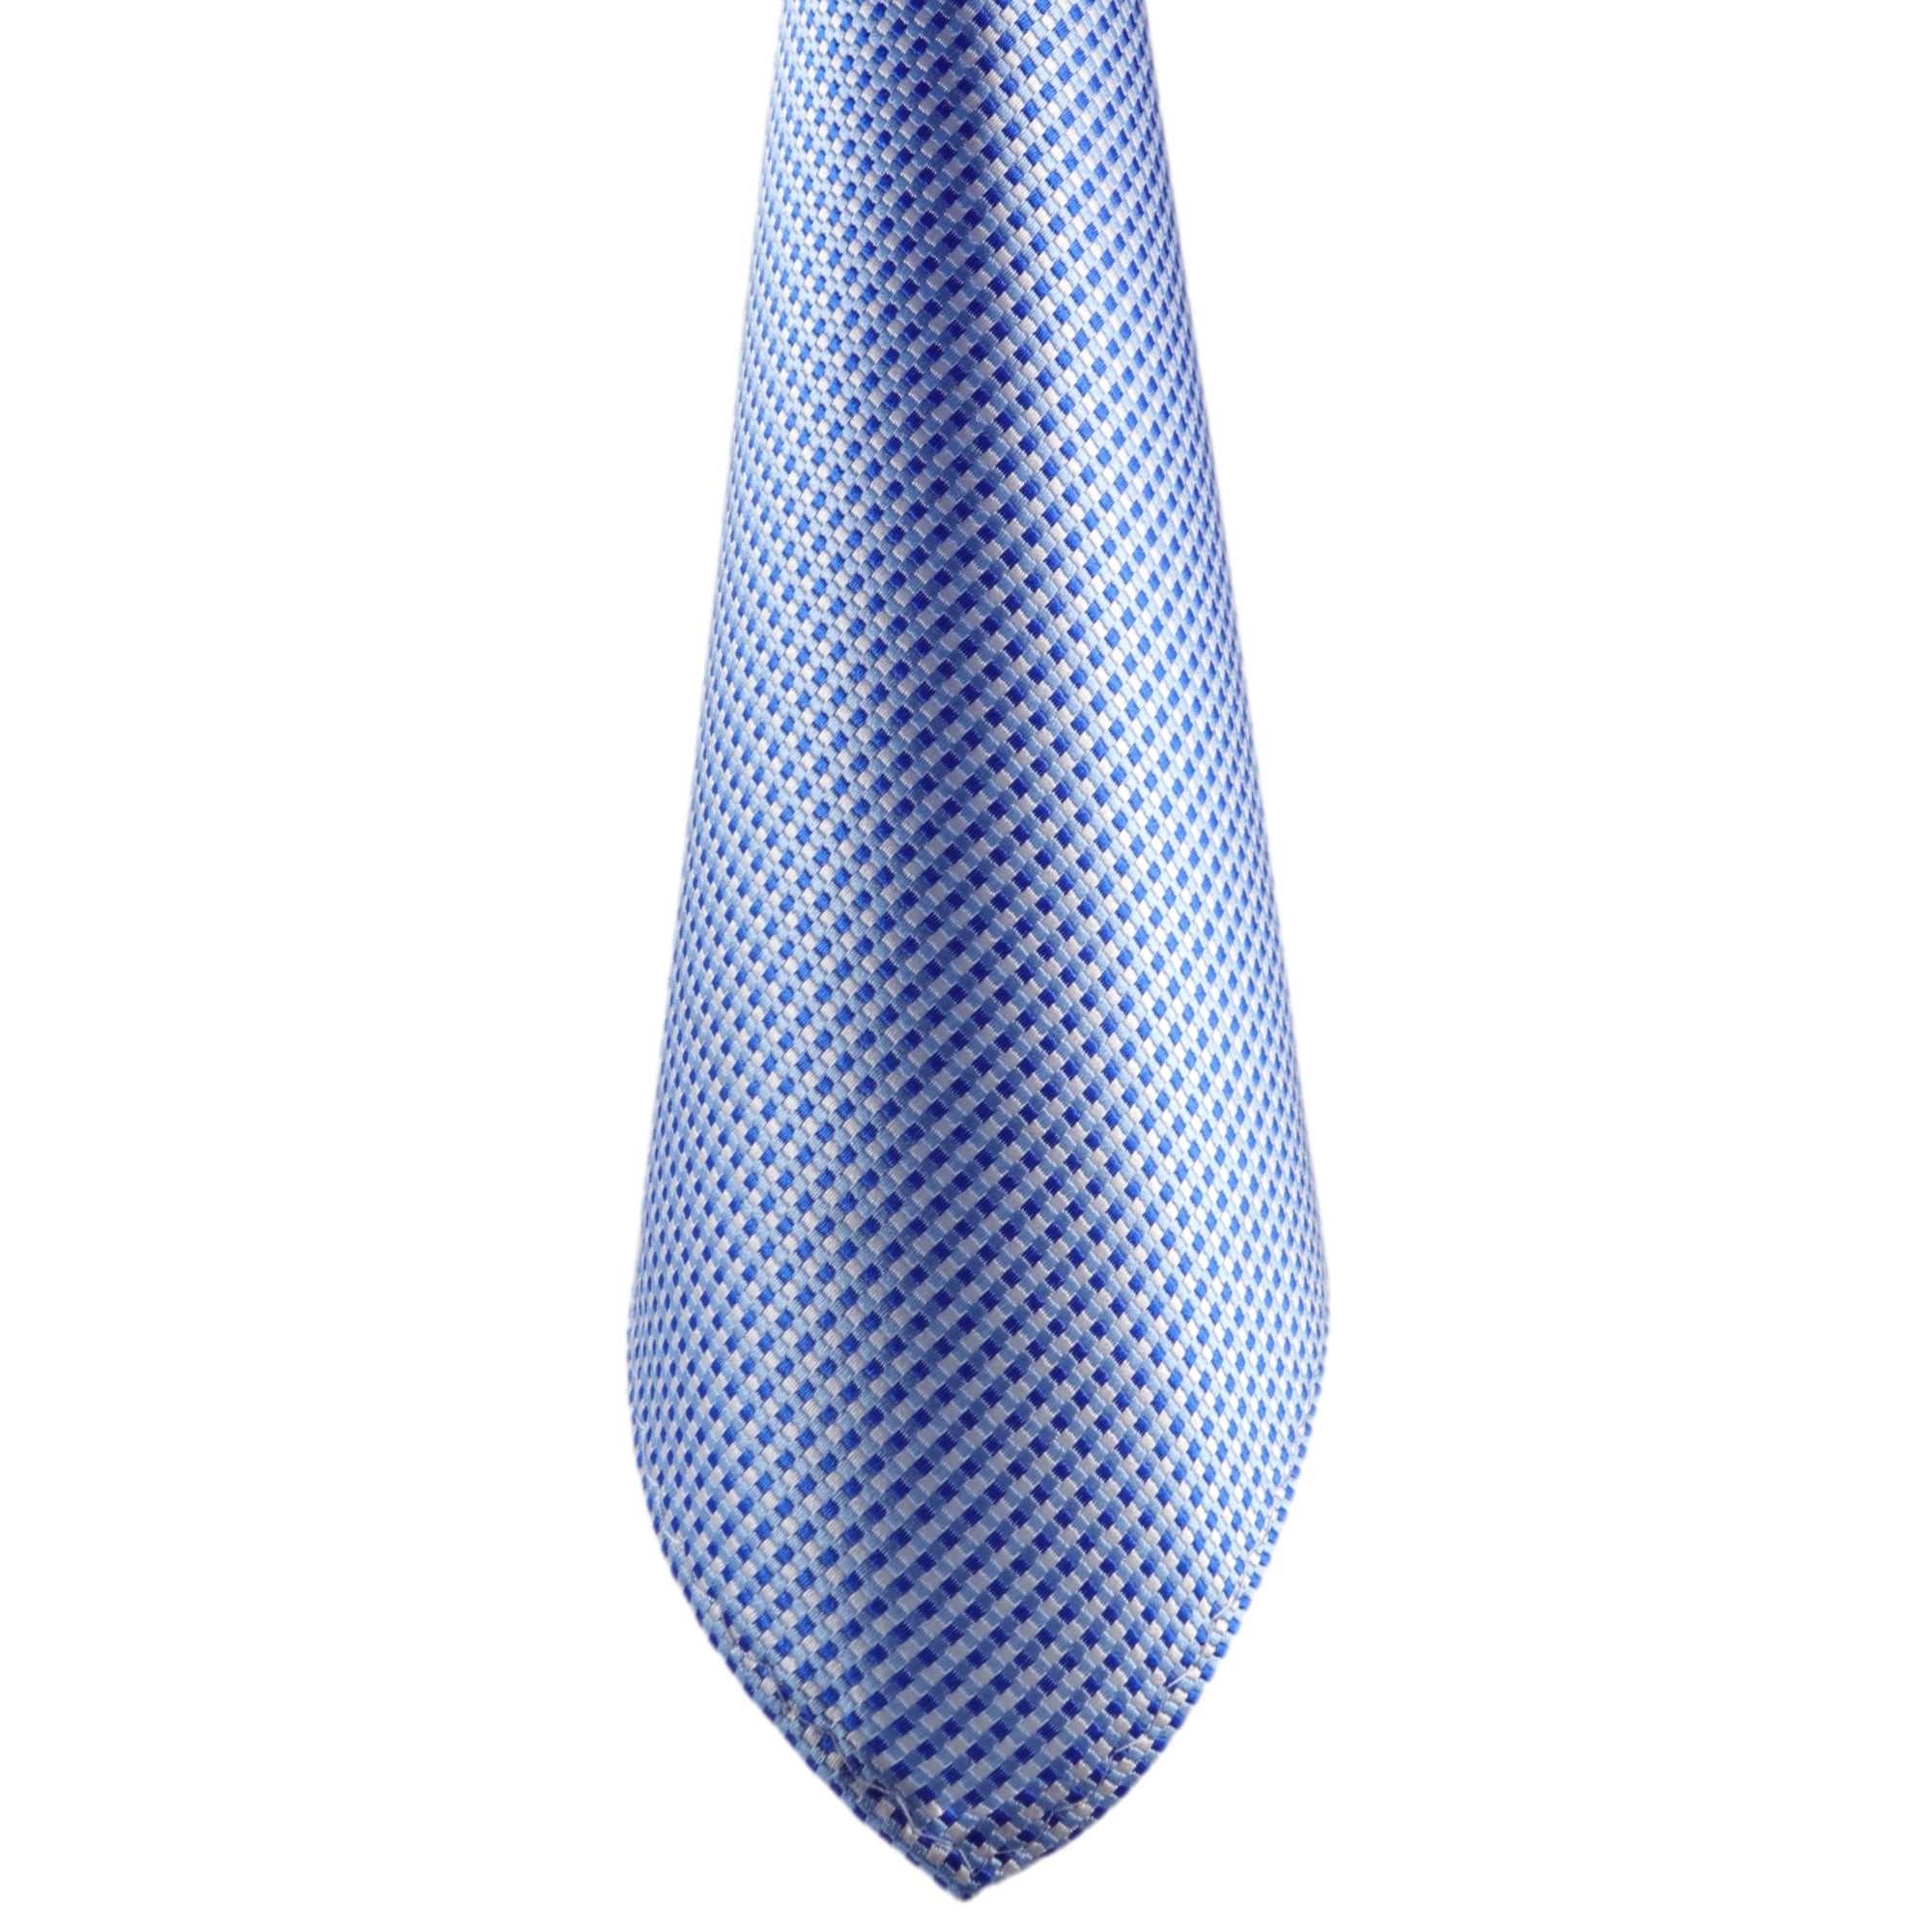 Kaufen Sie Blau-Weiss Karierte Herren-Fliege! im GASSANIshop - GASSANI  Krawatten